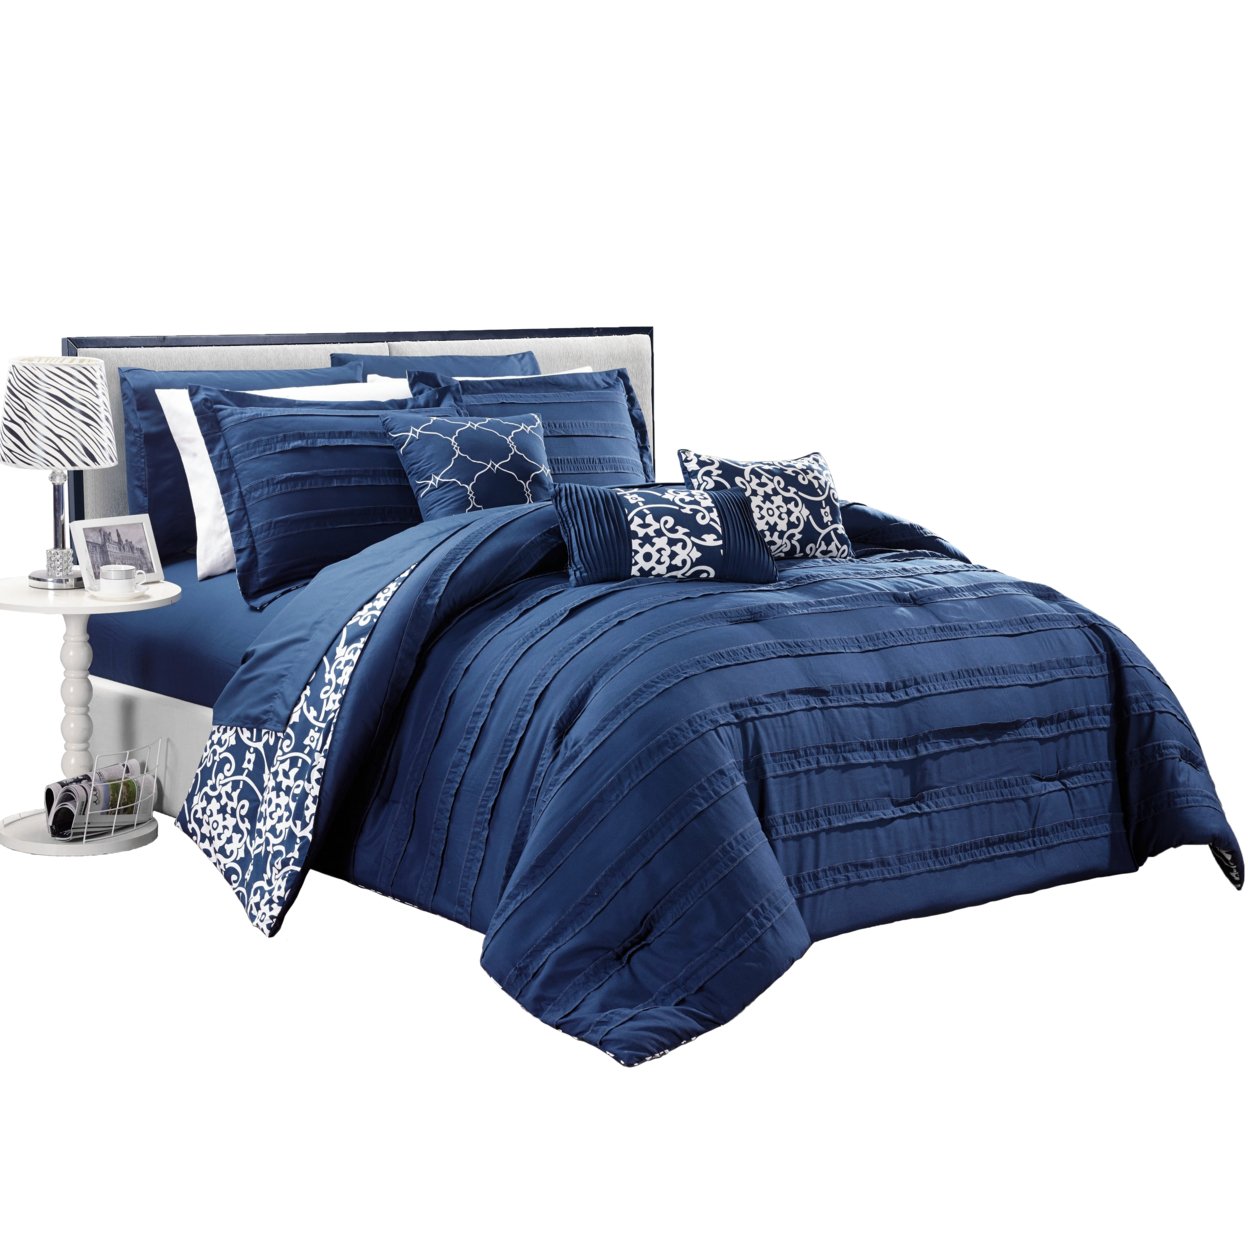 10-Piece Reversible Bed In A Bag Comforter & Sheet Set, Multiple Colors - Beige, Queen